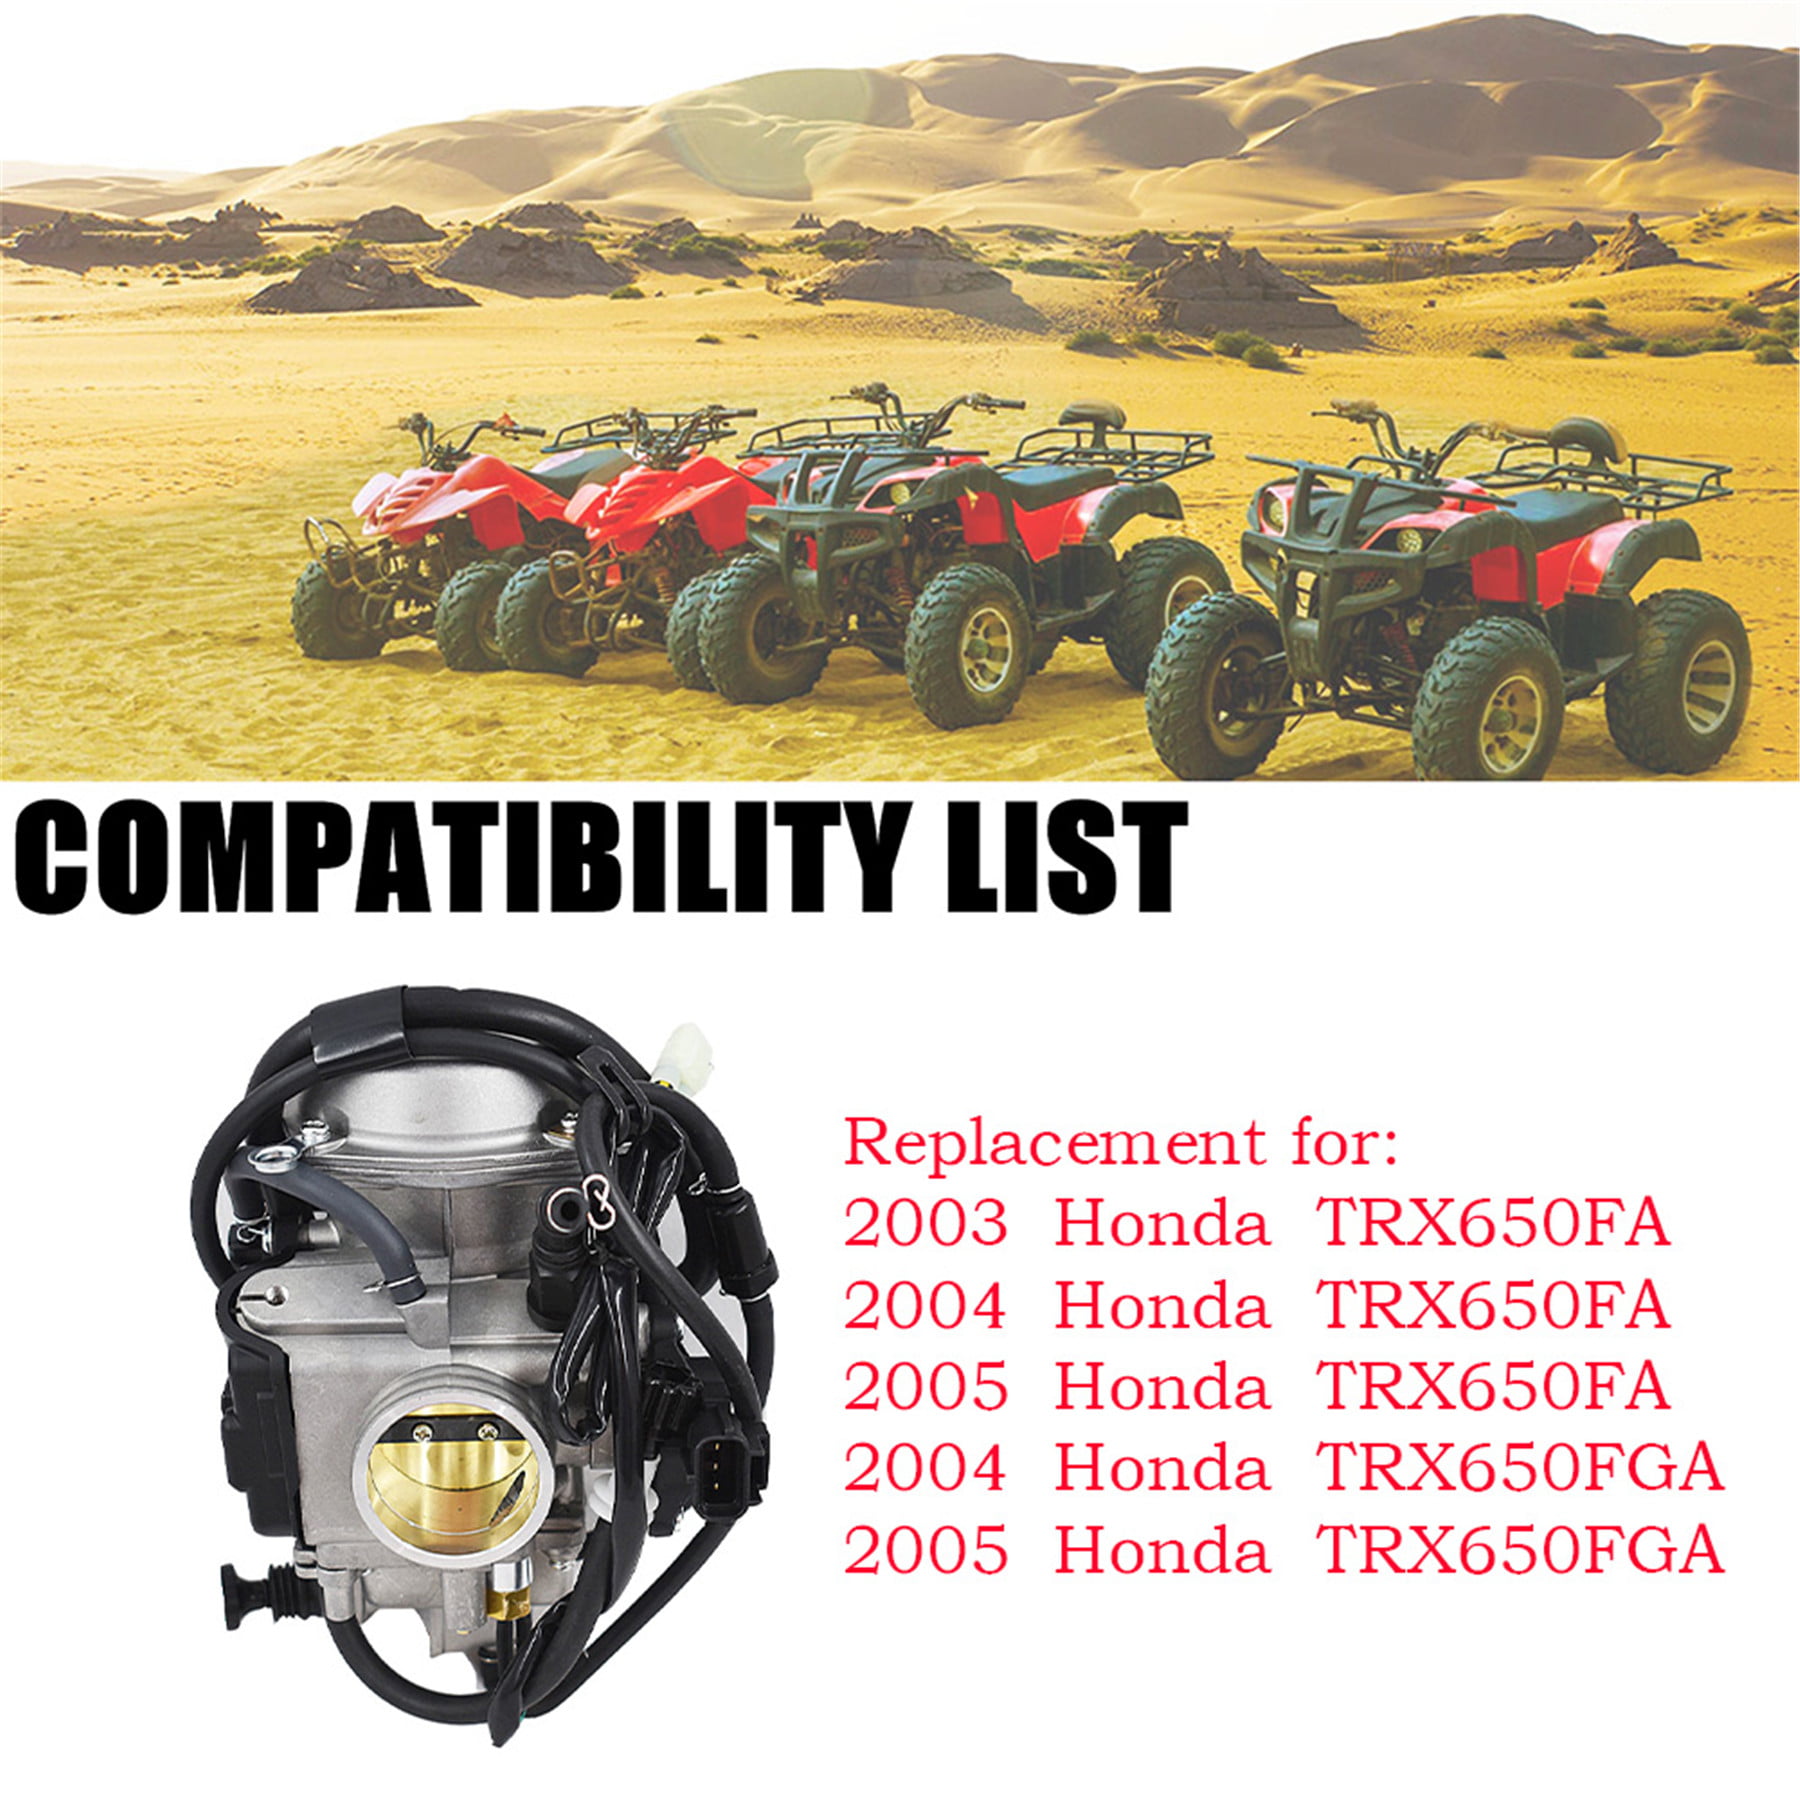 ファッション小物・ストライプストール・ストール・縞模様 TJHSMキャブレター16100-HN 8-013 ATV Carb Replacement  for Honda Rincon 650 TRX 650 TRX 650 FA 2003-2005